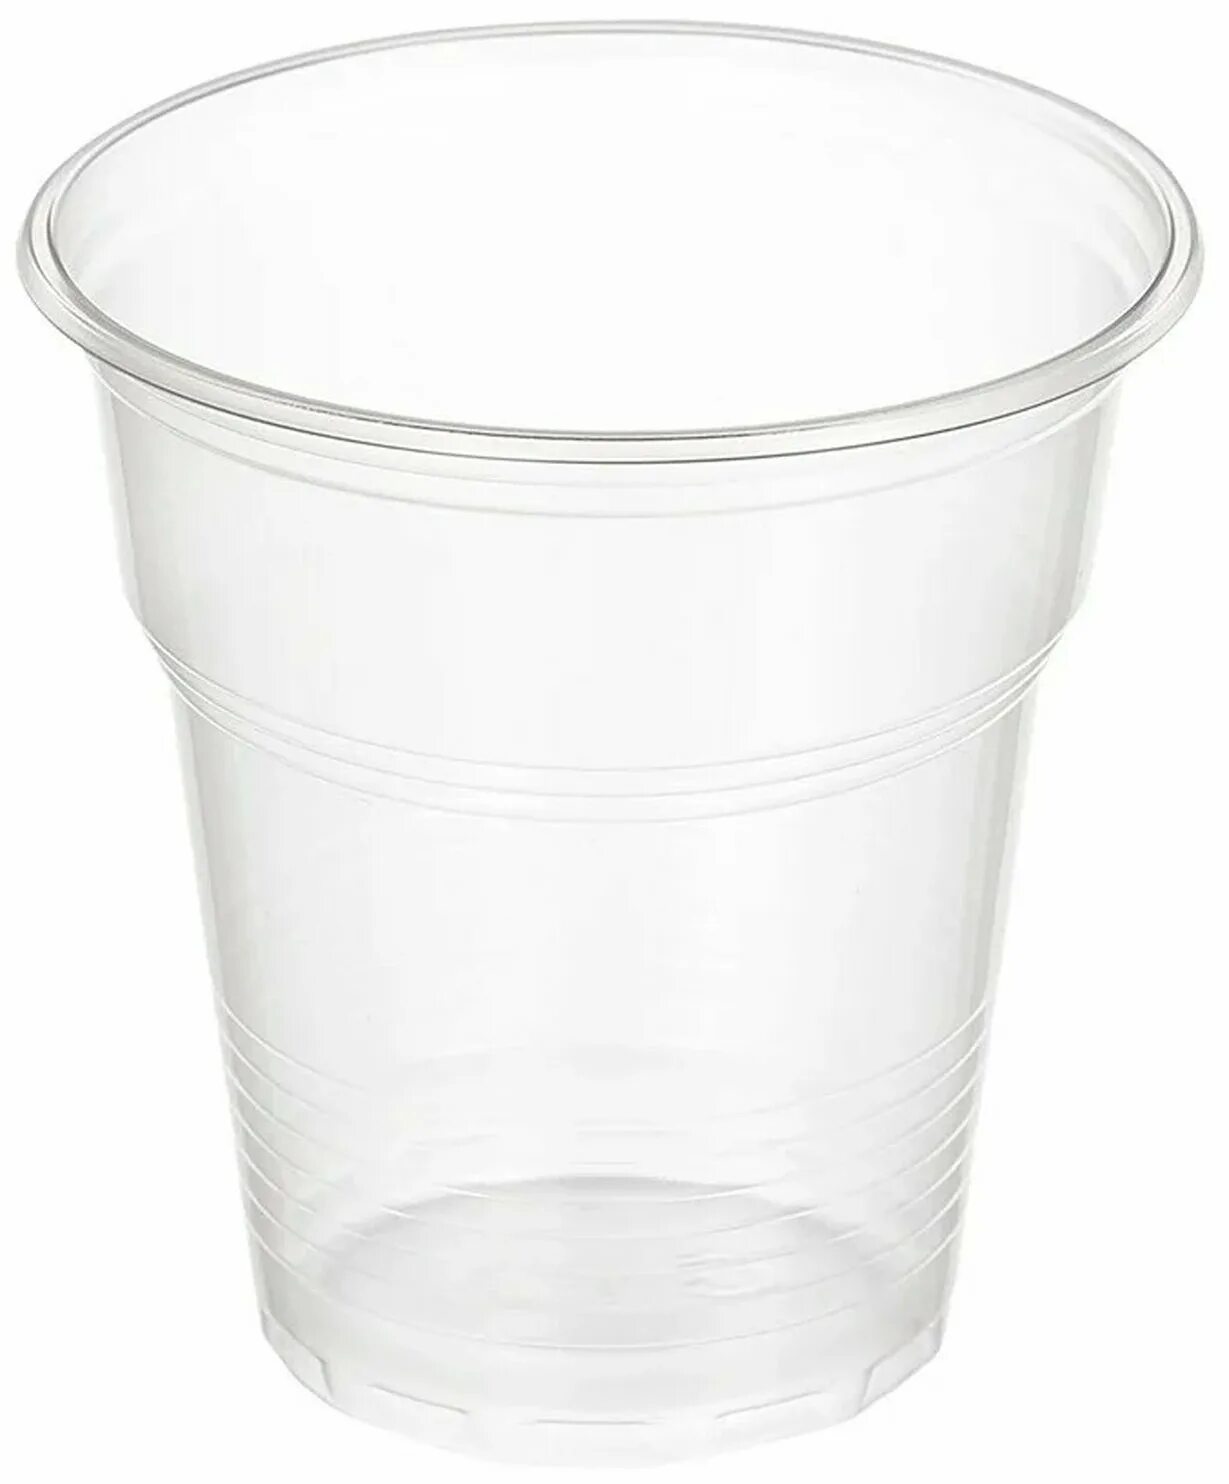 Пластиковые стаканы 500 мл купить. Одноразовые стаканчики 100 мл. Пластиковый стаканчик белый 100 мл. Стакан одноразовый пластиковый прозрачный 100 мл 100 шт. Комус одноразовая посуда.